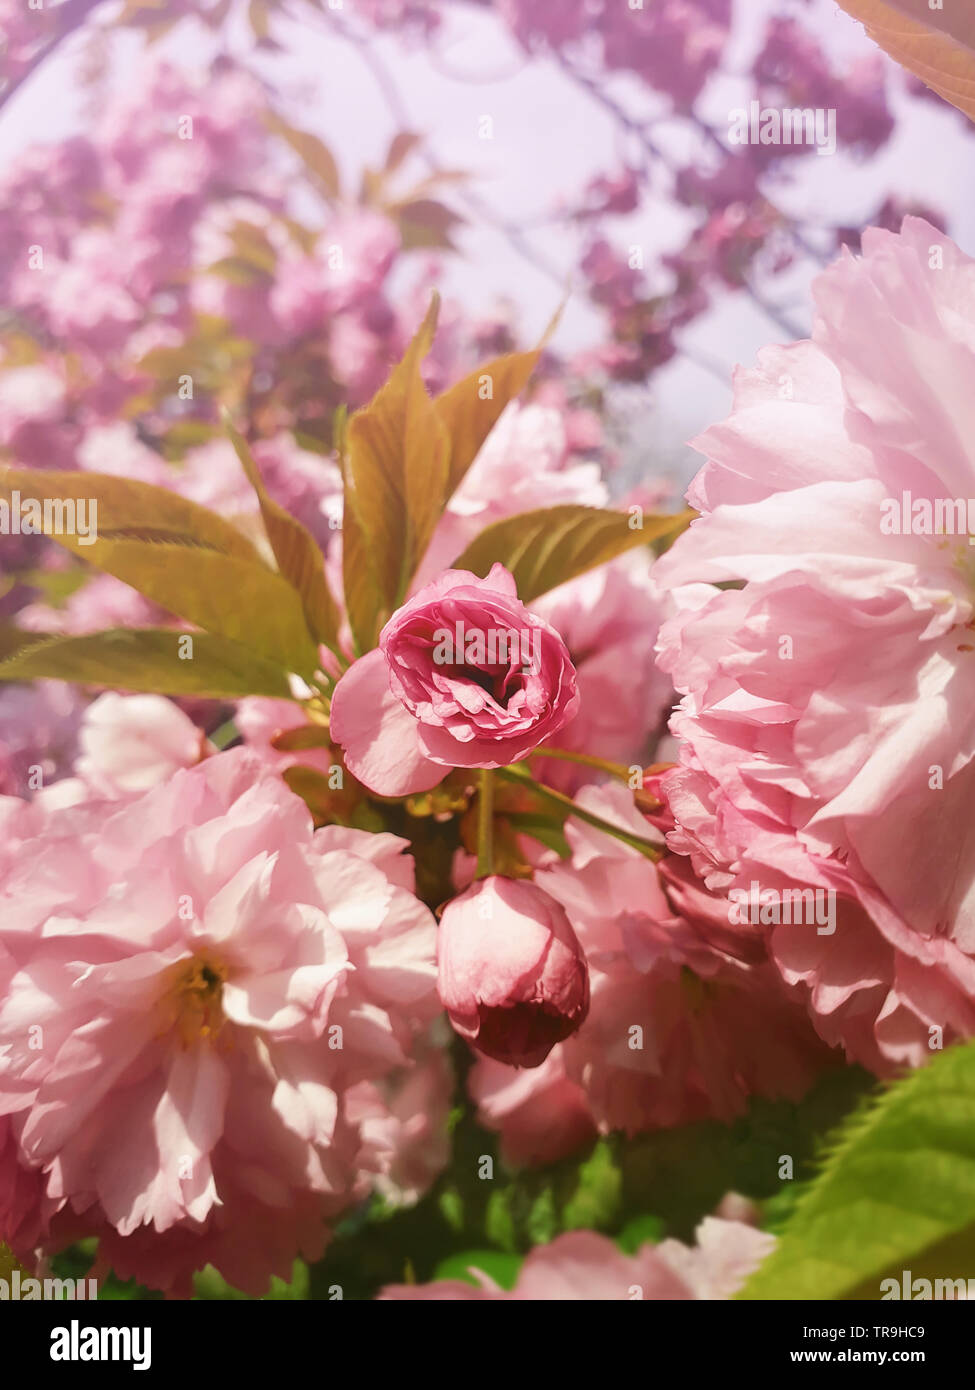 Close up pleine floraison des fleurs de cerisier japonais Sakura. Arbre à fleurs rose sauvage en fleurs et bourgeons vert feuilles en croissance. Motif floral, cluster de printemps Banque D'Images